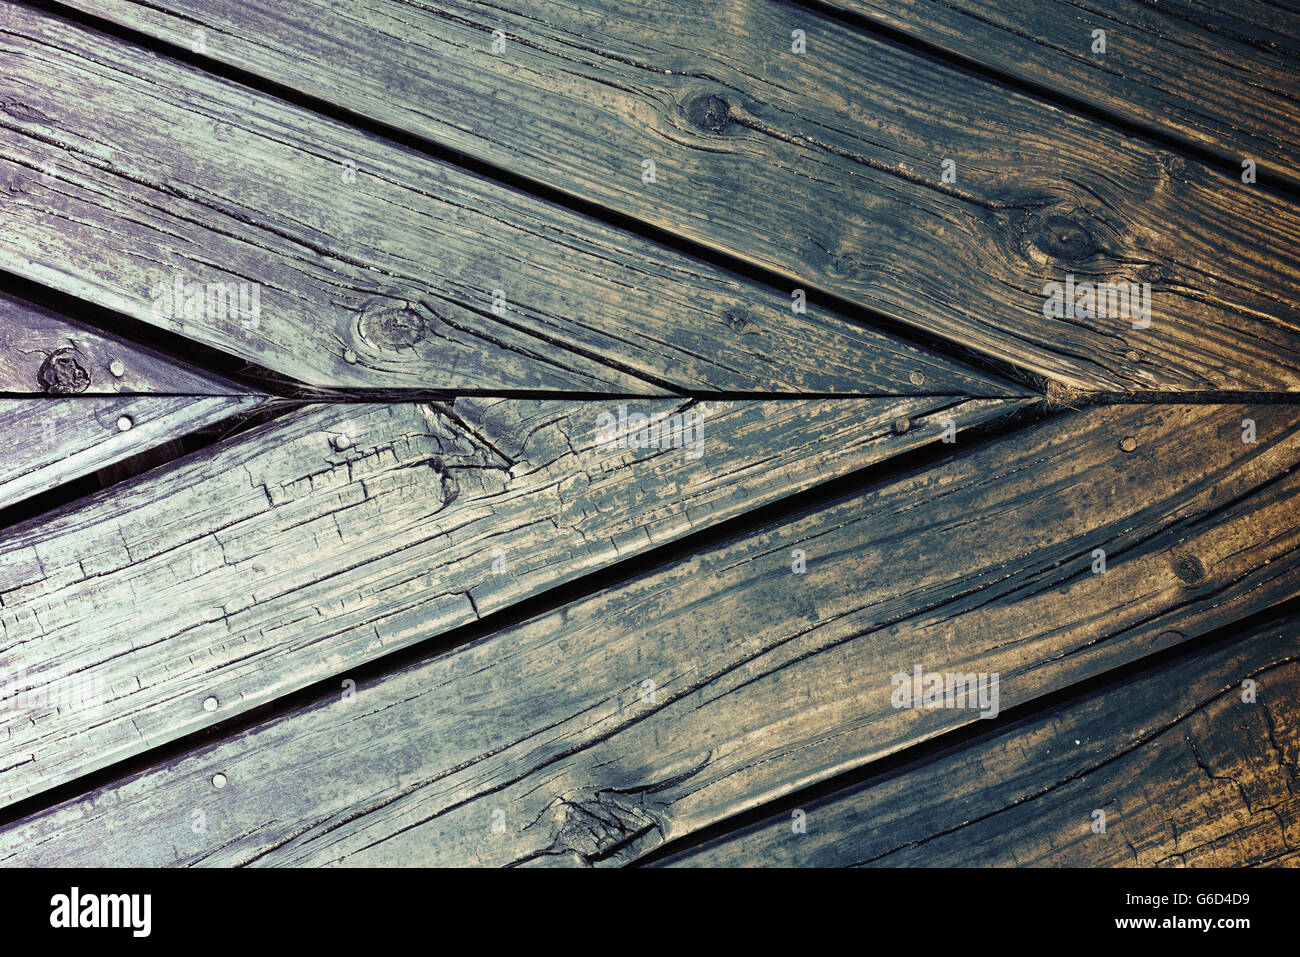 Close up Vue de dessus de la surface de plancher en bois naturel, hipster style vintage texture de fond rustique. Banque D'Images